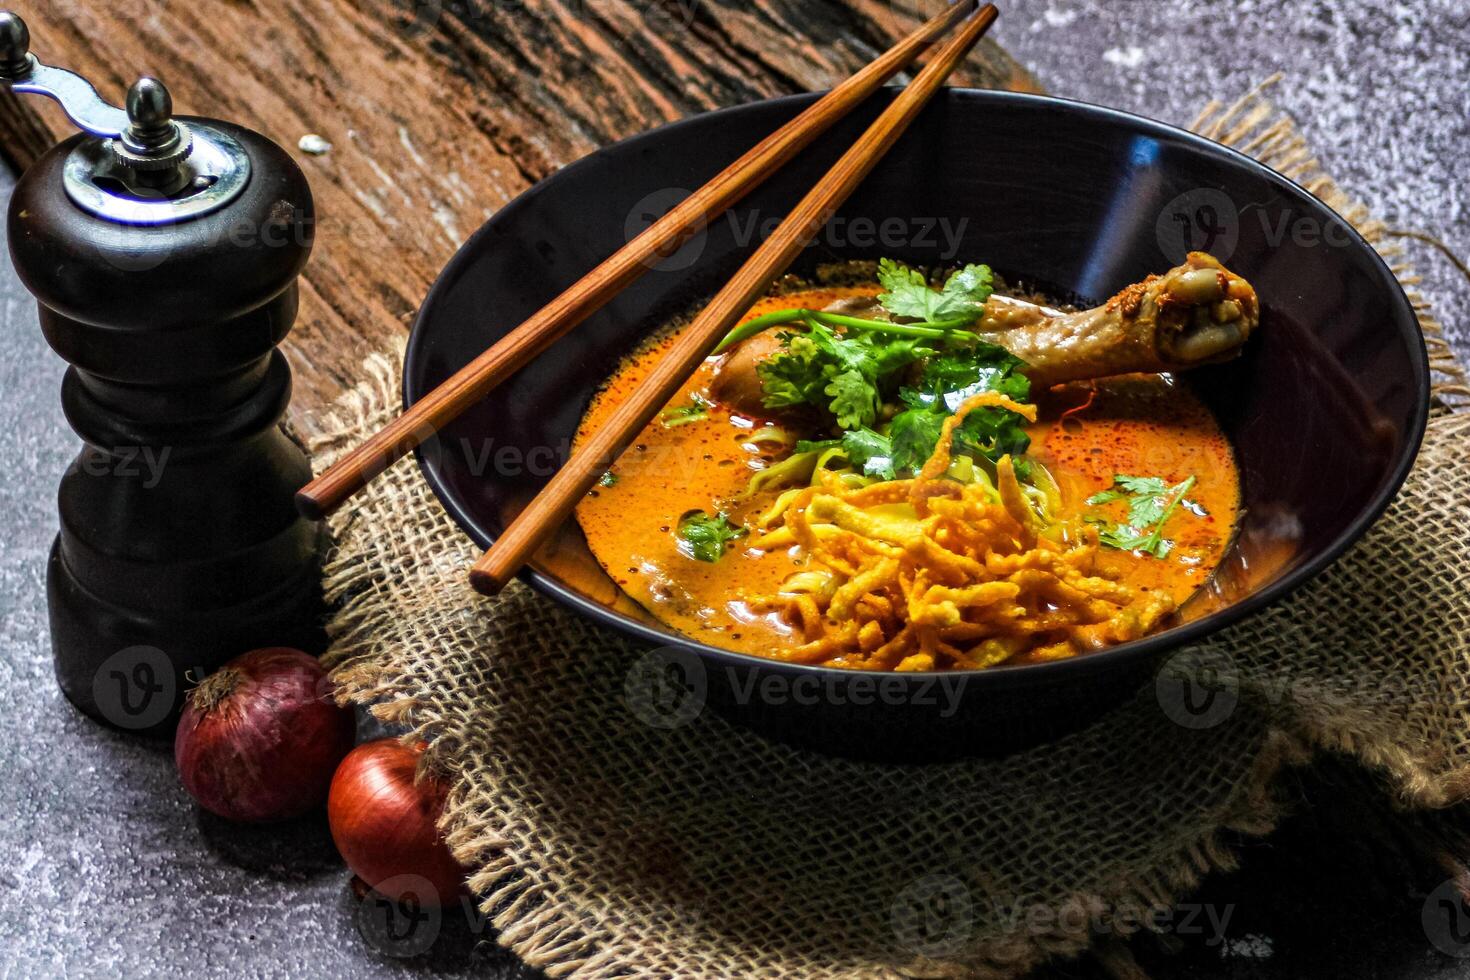 khao så jag recept khao soi,khao så jag kai, thai spaghetti khao så jag, kyckling curry med krydda på trä- golv, nordlig thai mat begrepp. lanna mat foto